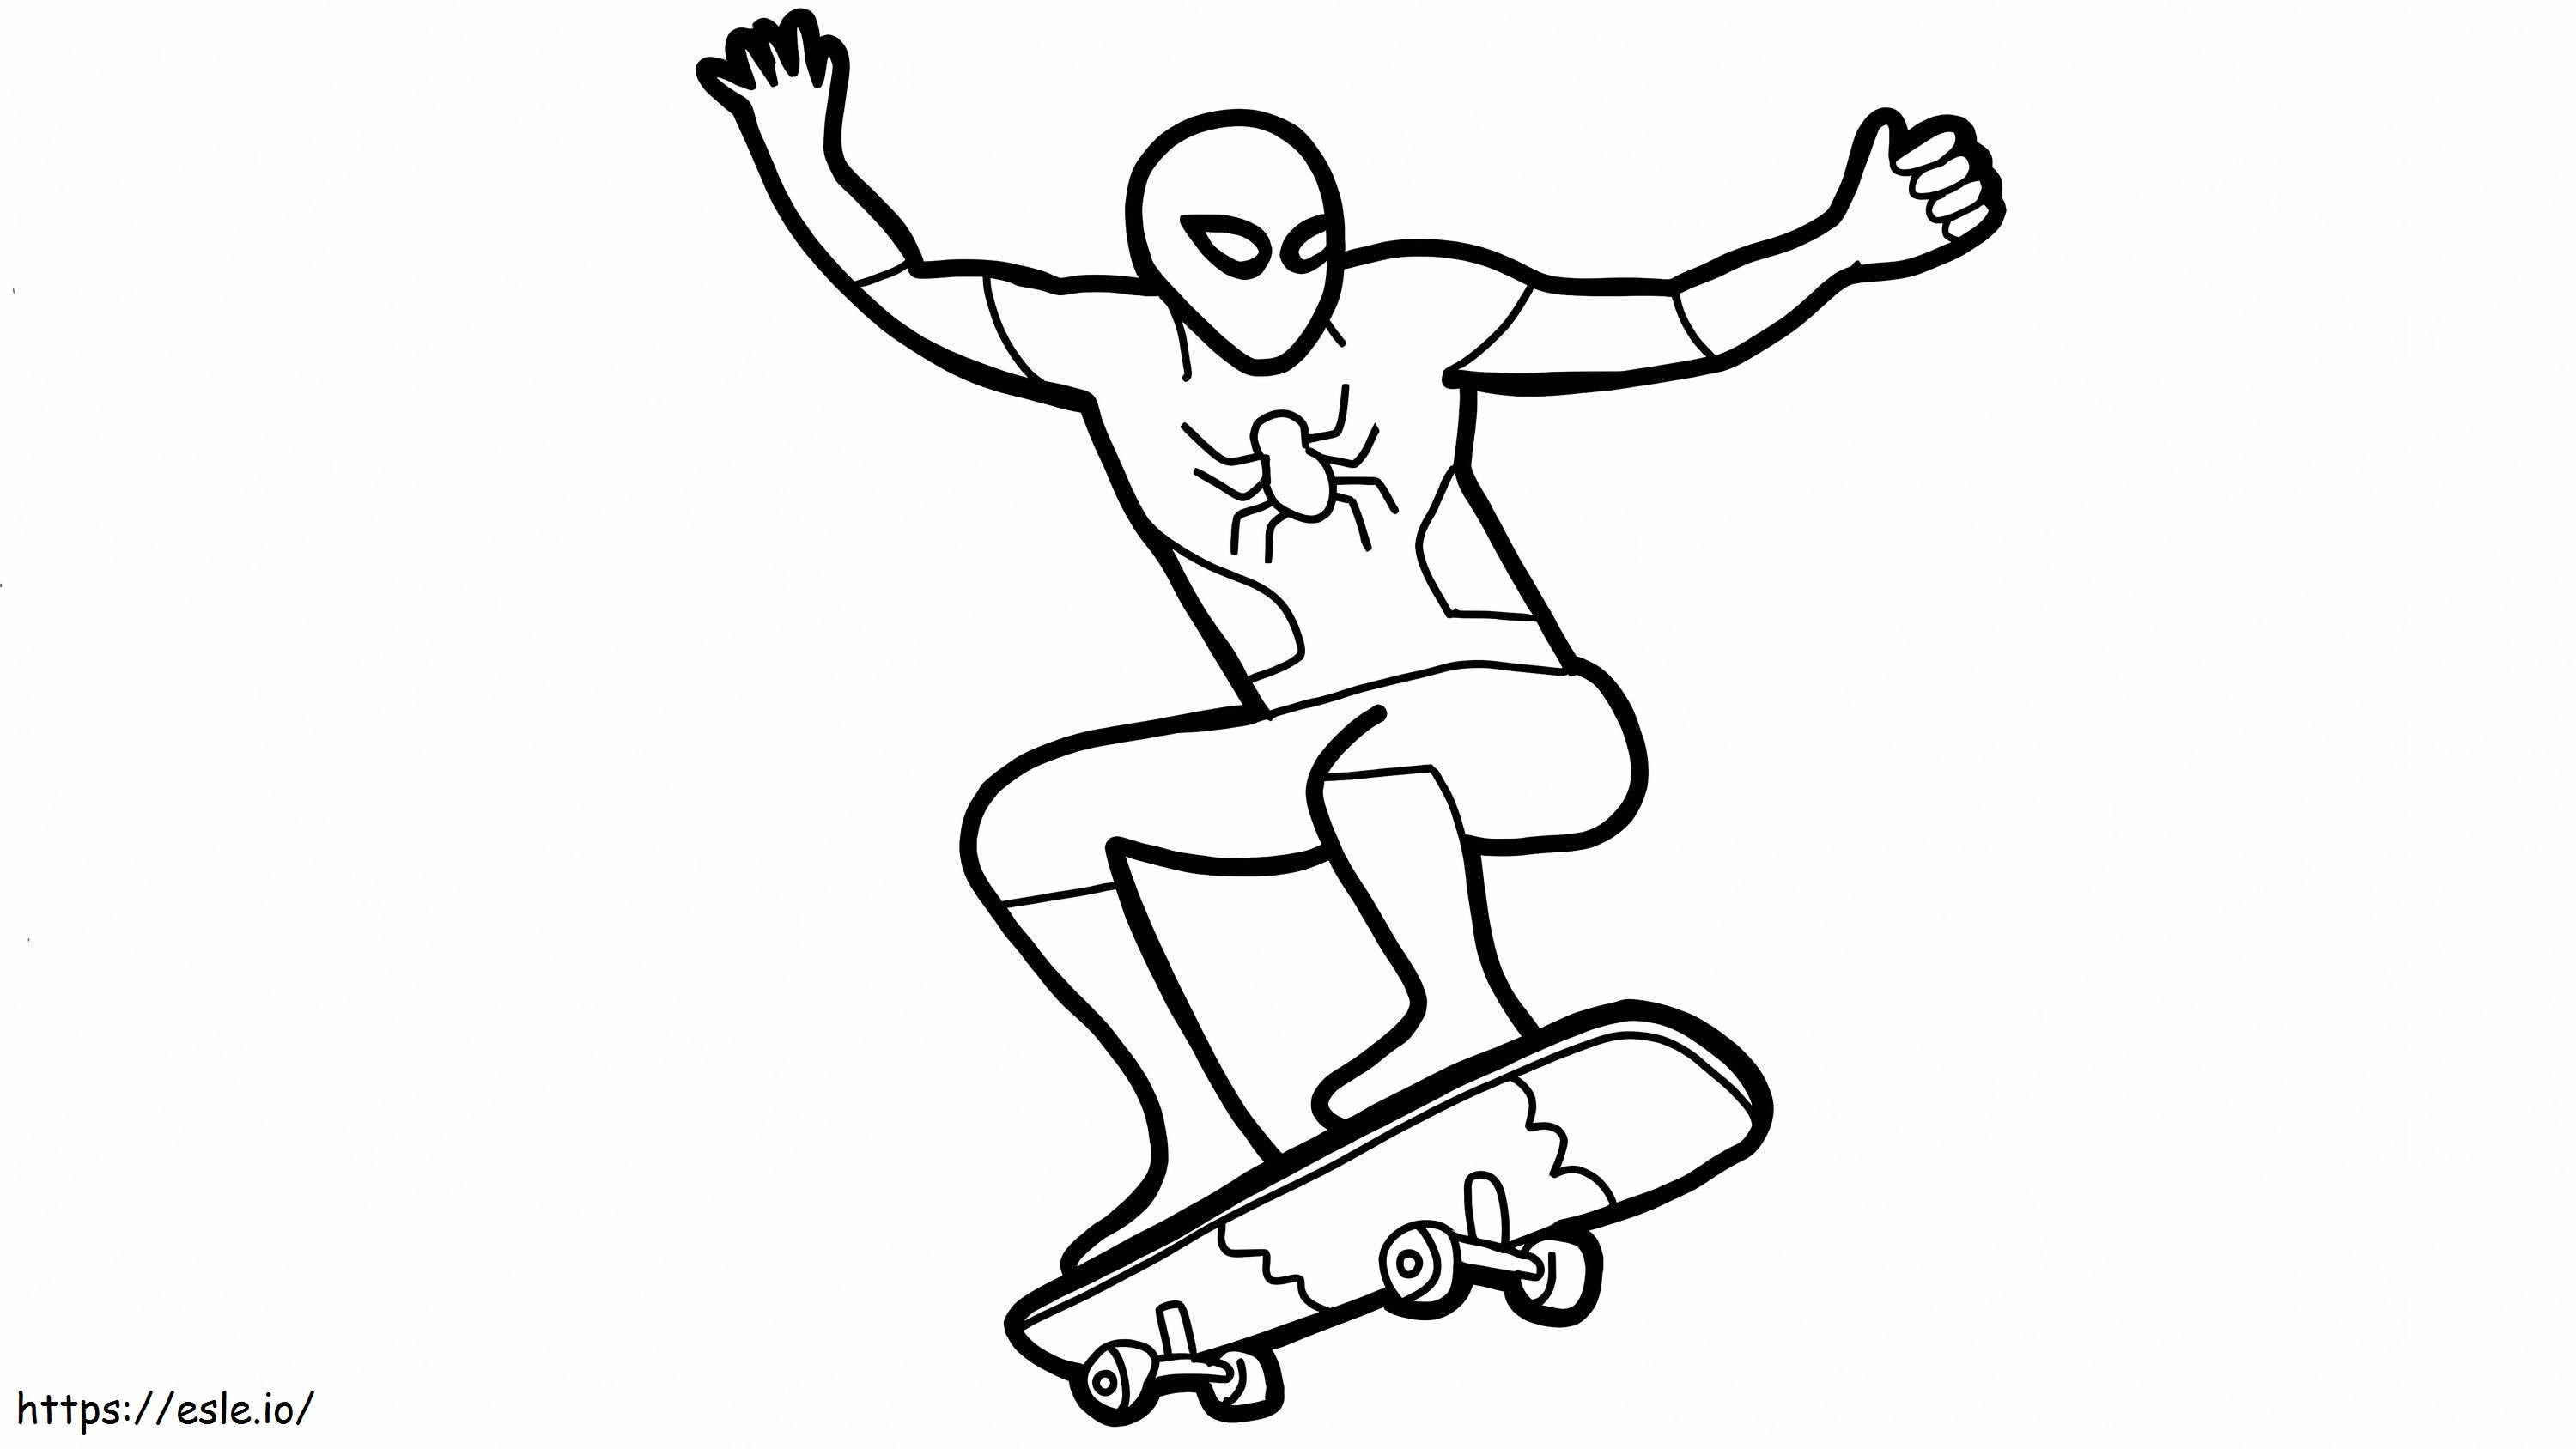 Uomo ragno e skateboard da colorare